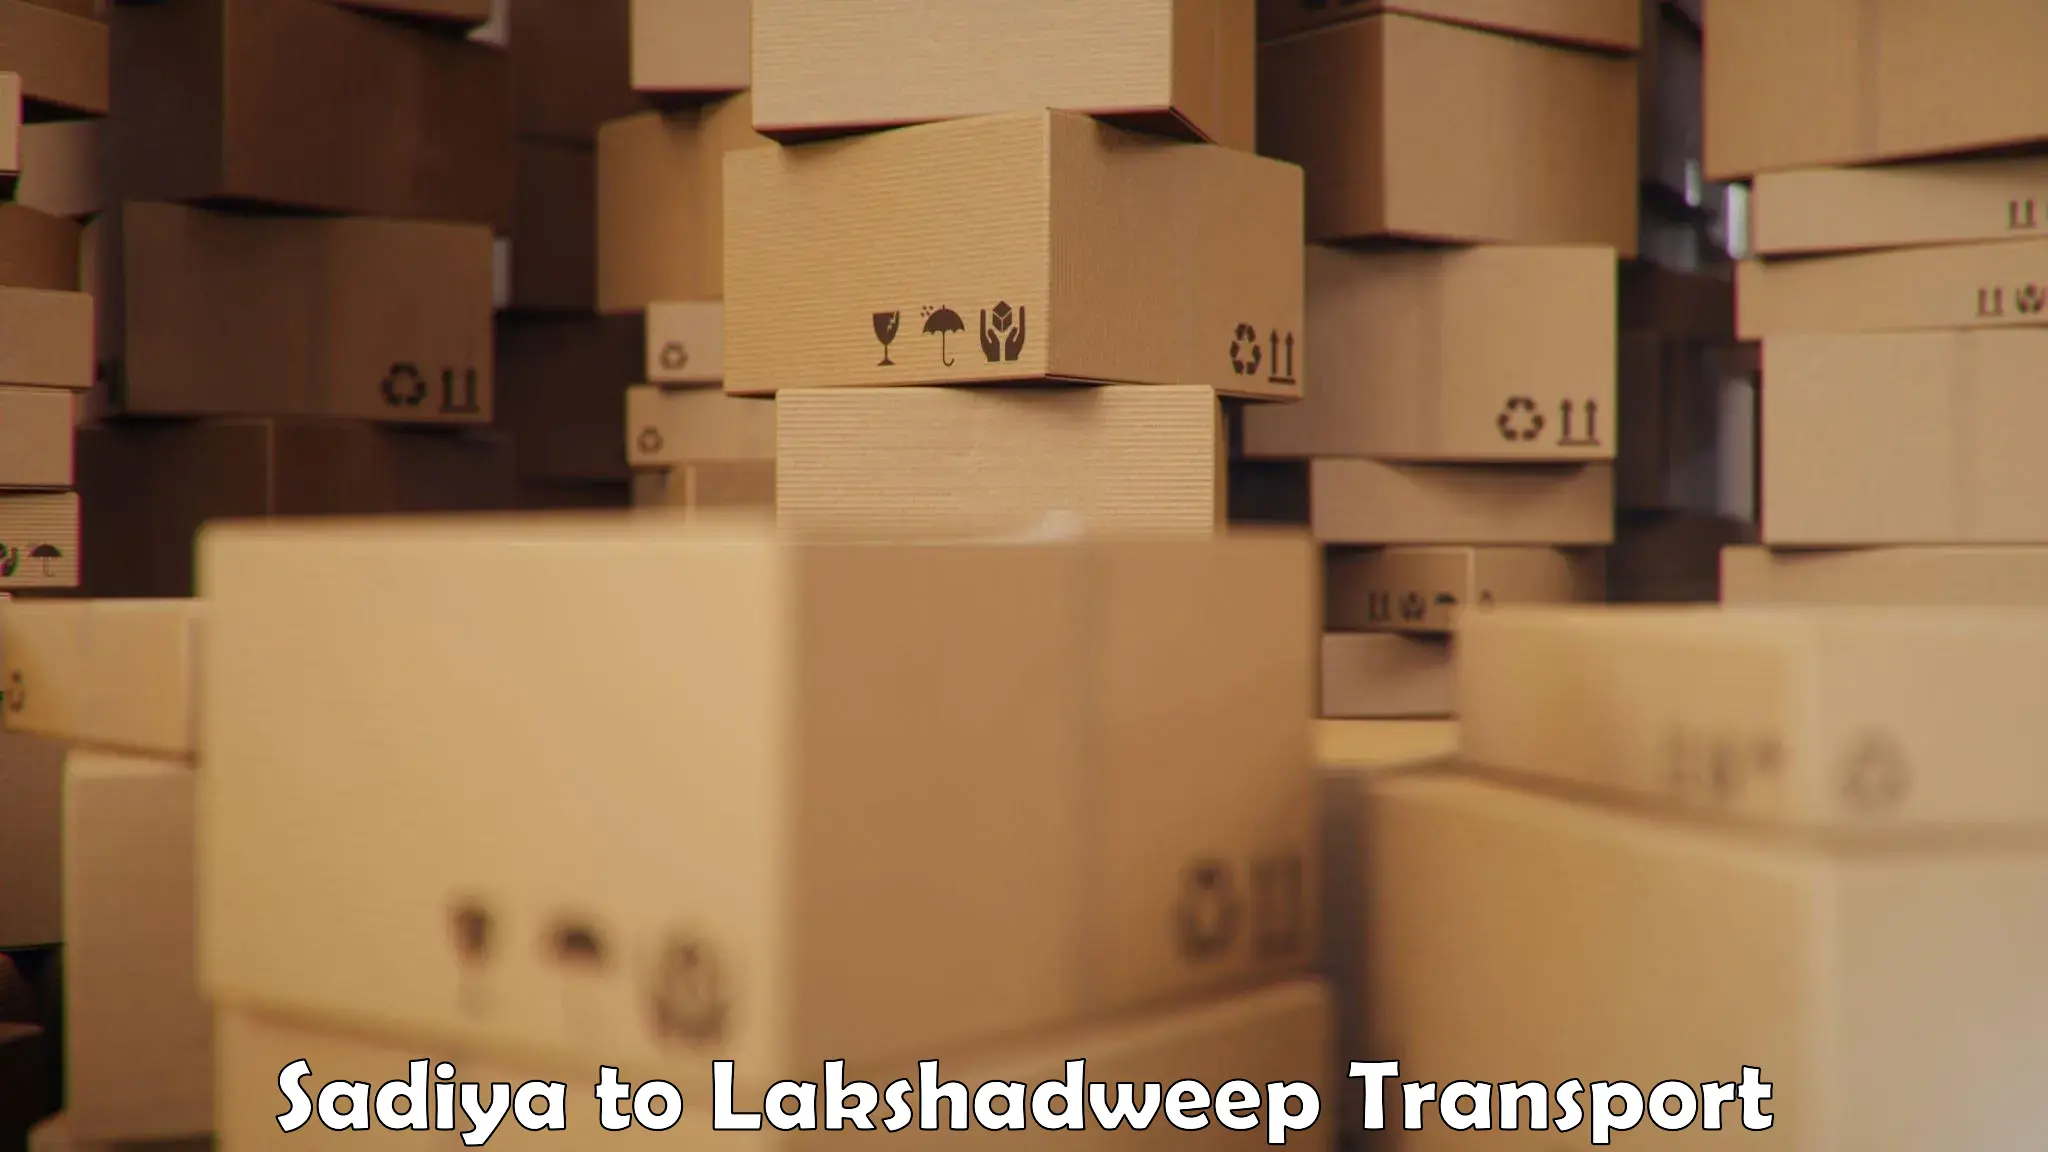 Pick up transport service Sadiya to Lakshadweep